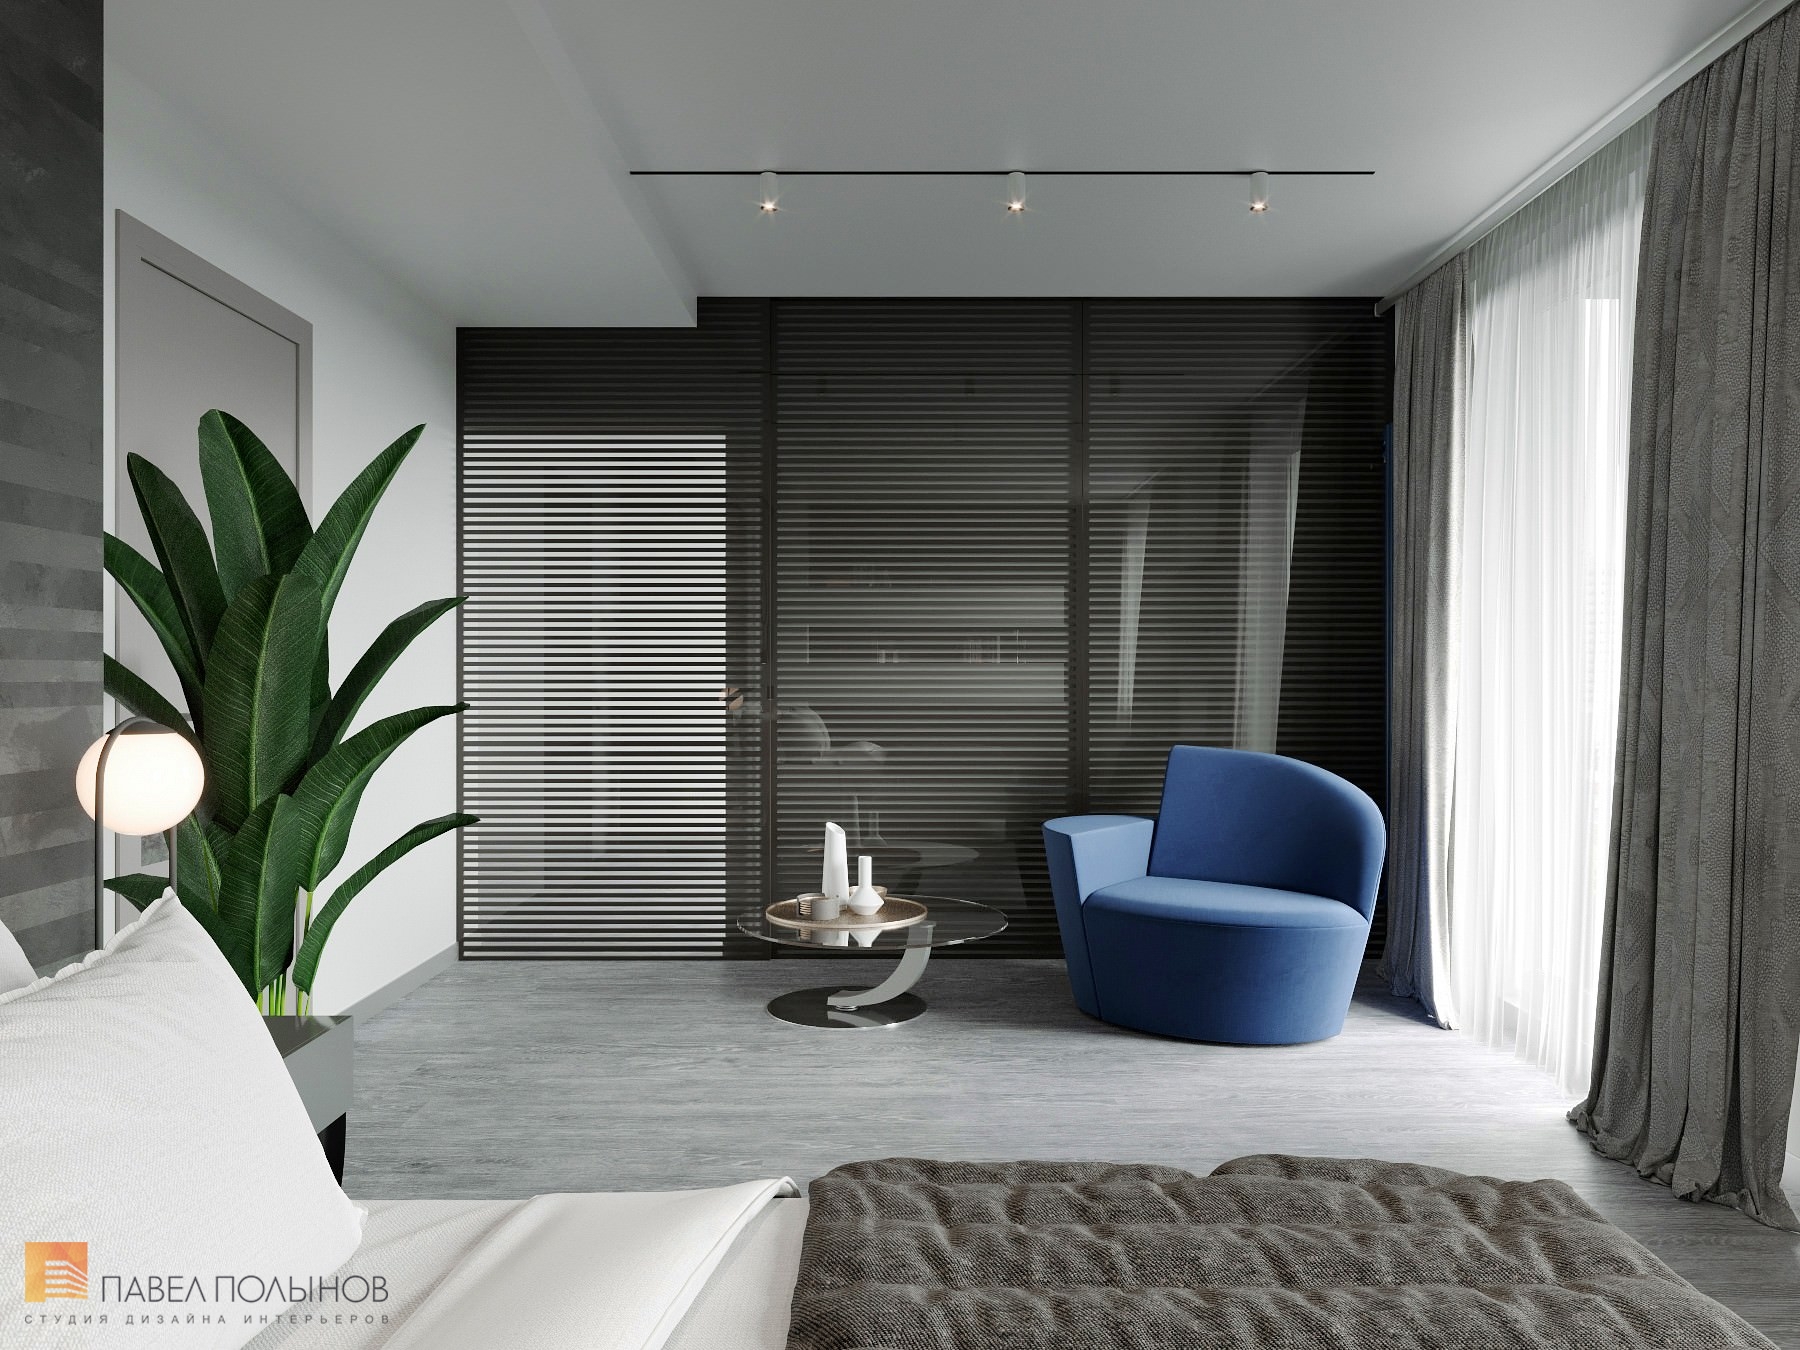 Фото интерьер спальни из проекта «Дизайн интерьер квартиры в ЖК «Кремлевские звезды», современный стиль, 133 кв.м.»